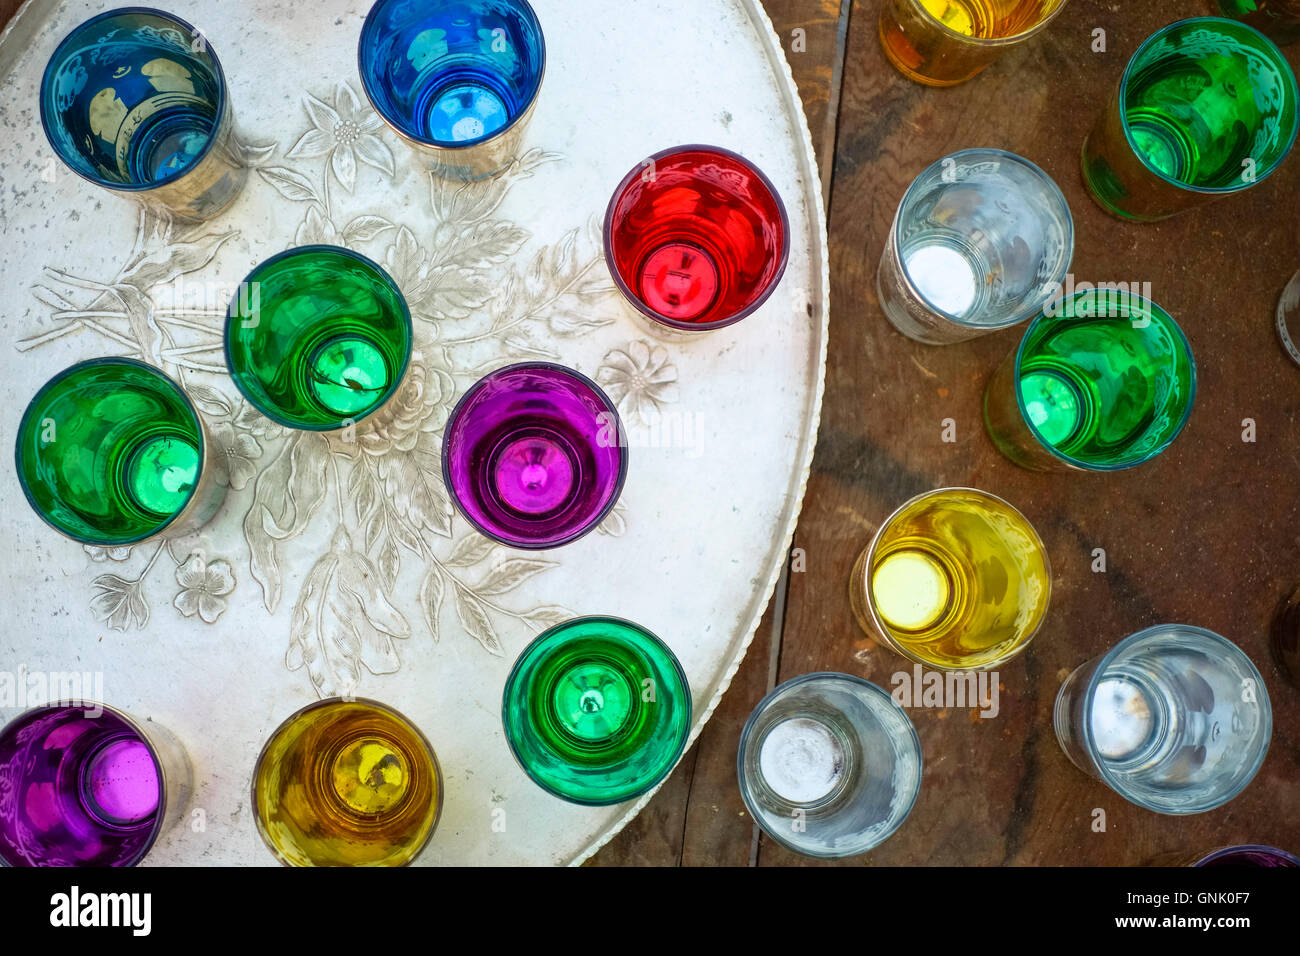 Grupo de coloridos vasos de té marroquí grabado en la bandeja de servir. Foto de stock